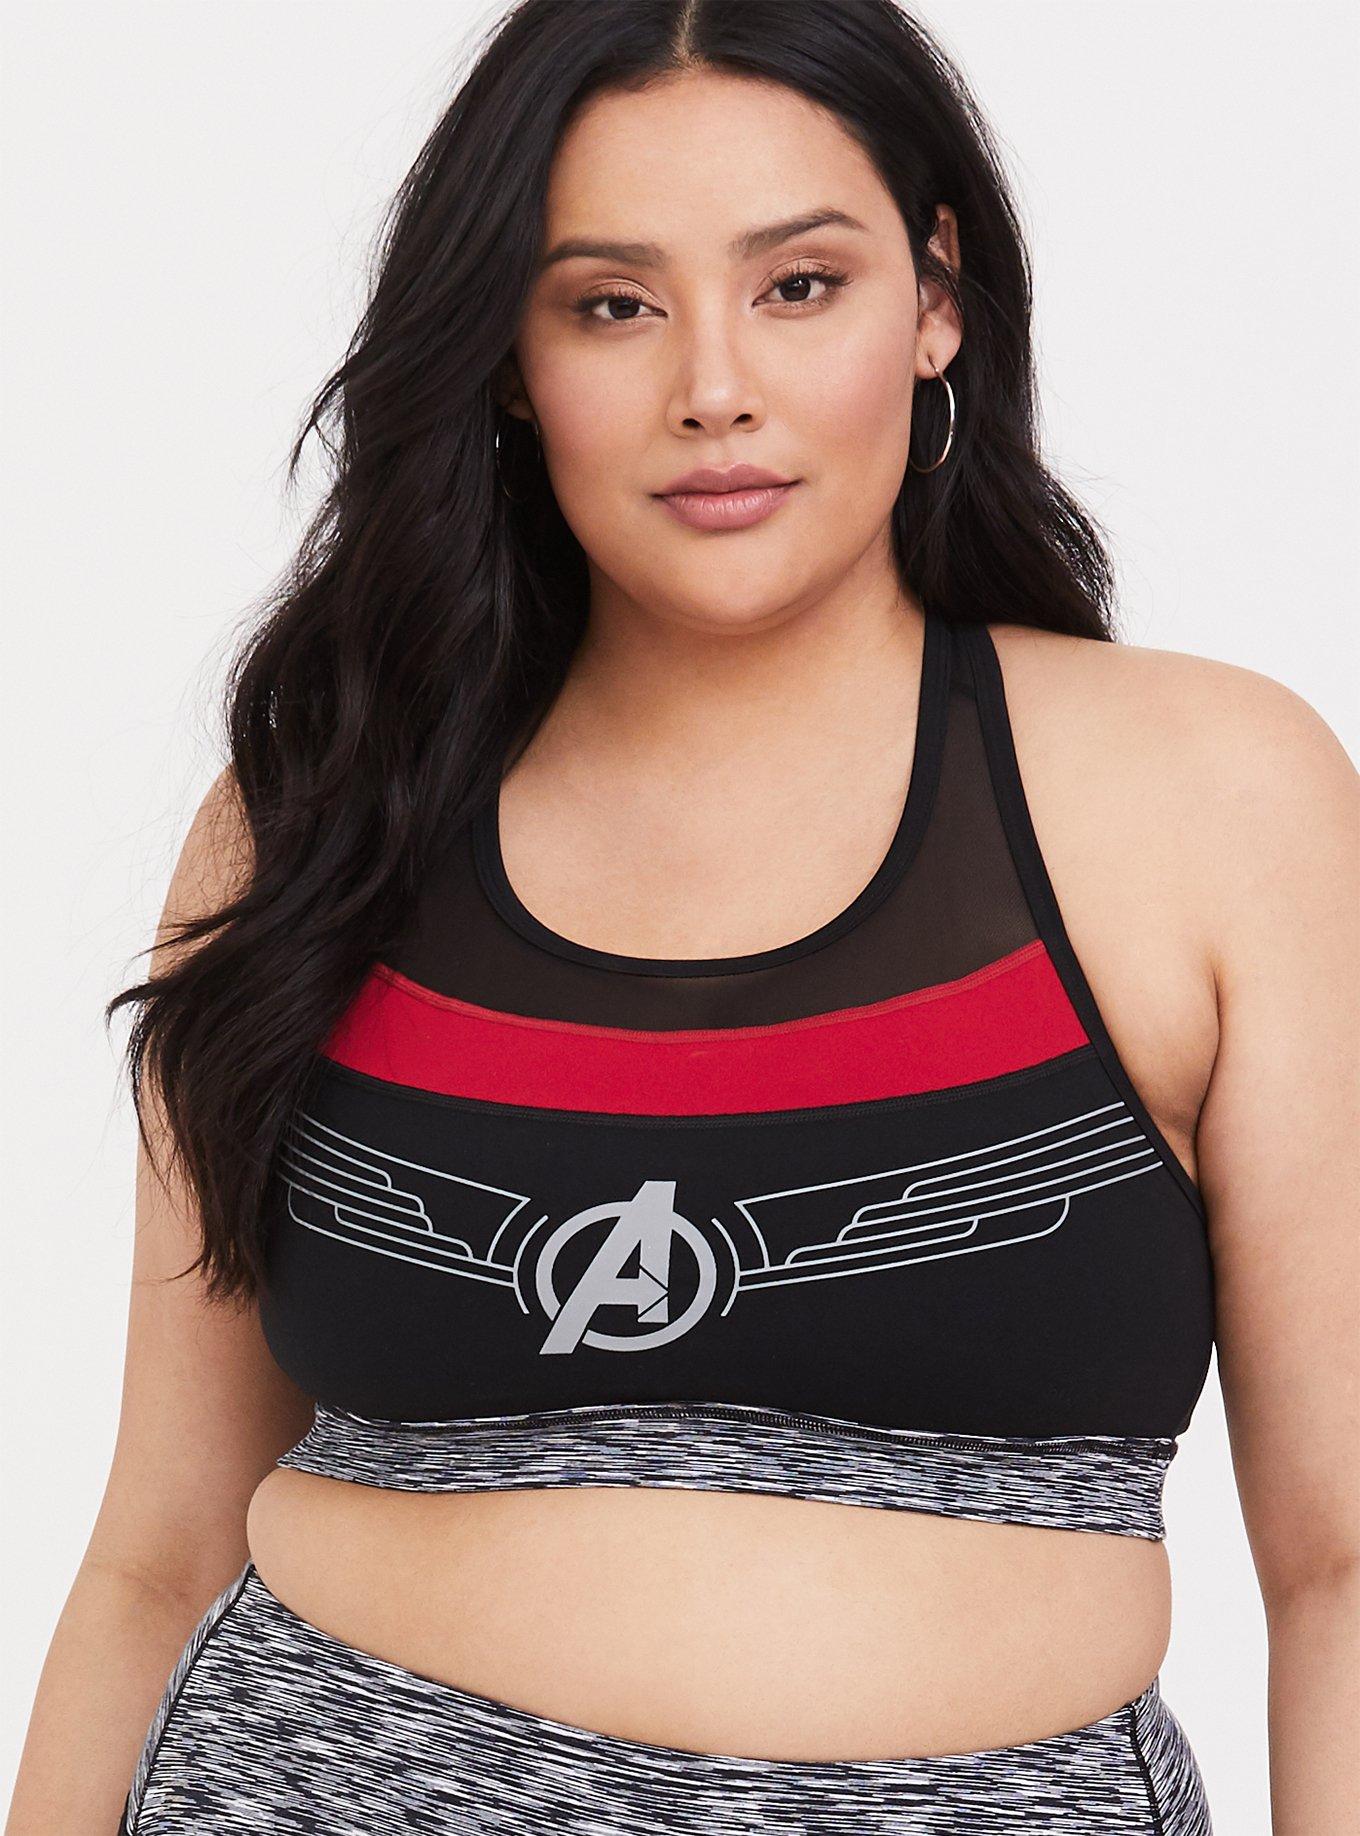 Torrid Marvel women's size 2 sports bra b29 - $19 - From Natalie